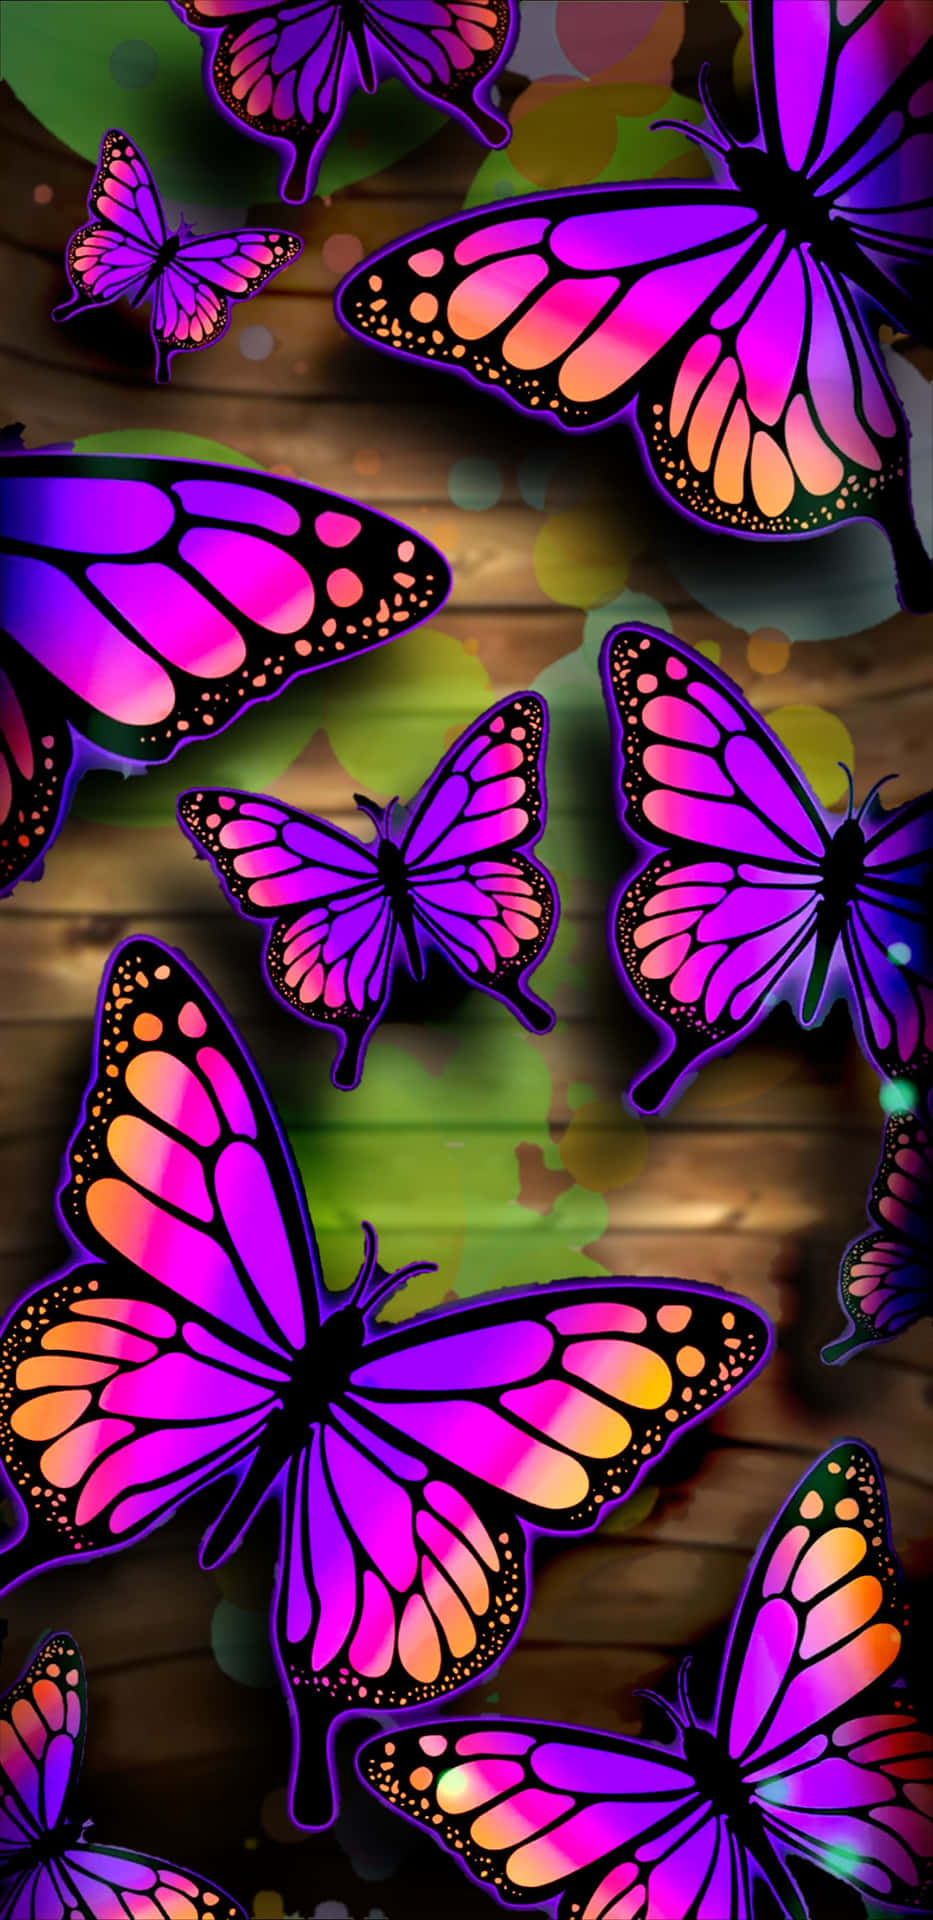 Engrupp Fjärilar På En Trämönstrad Bakgrund